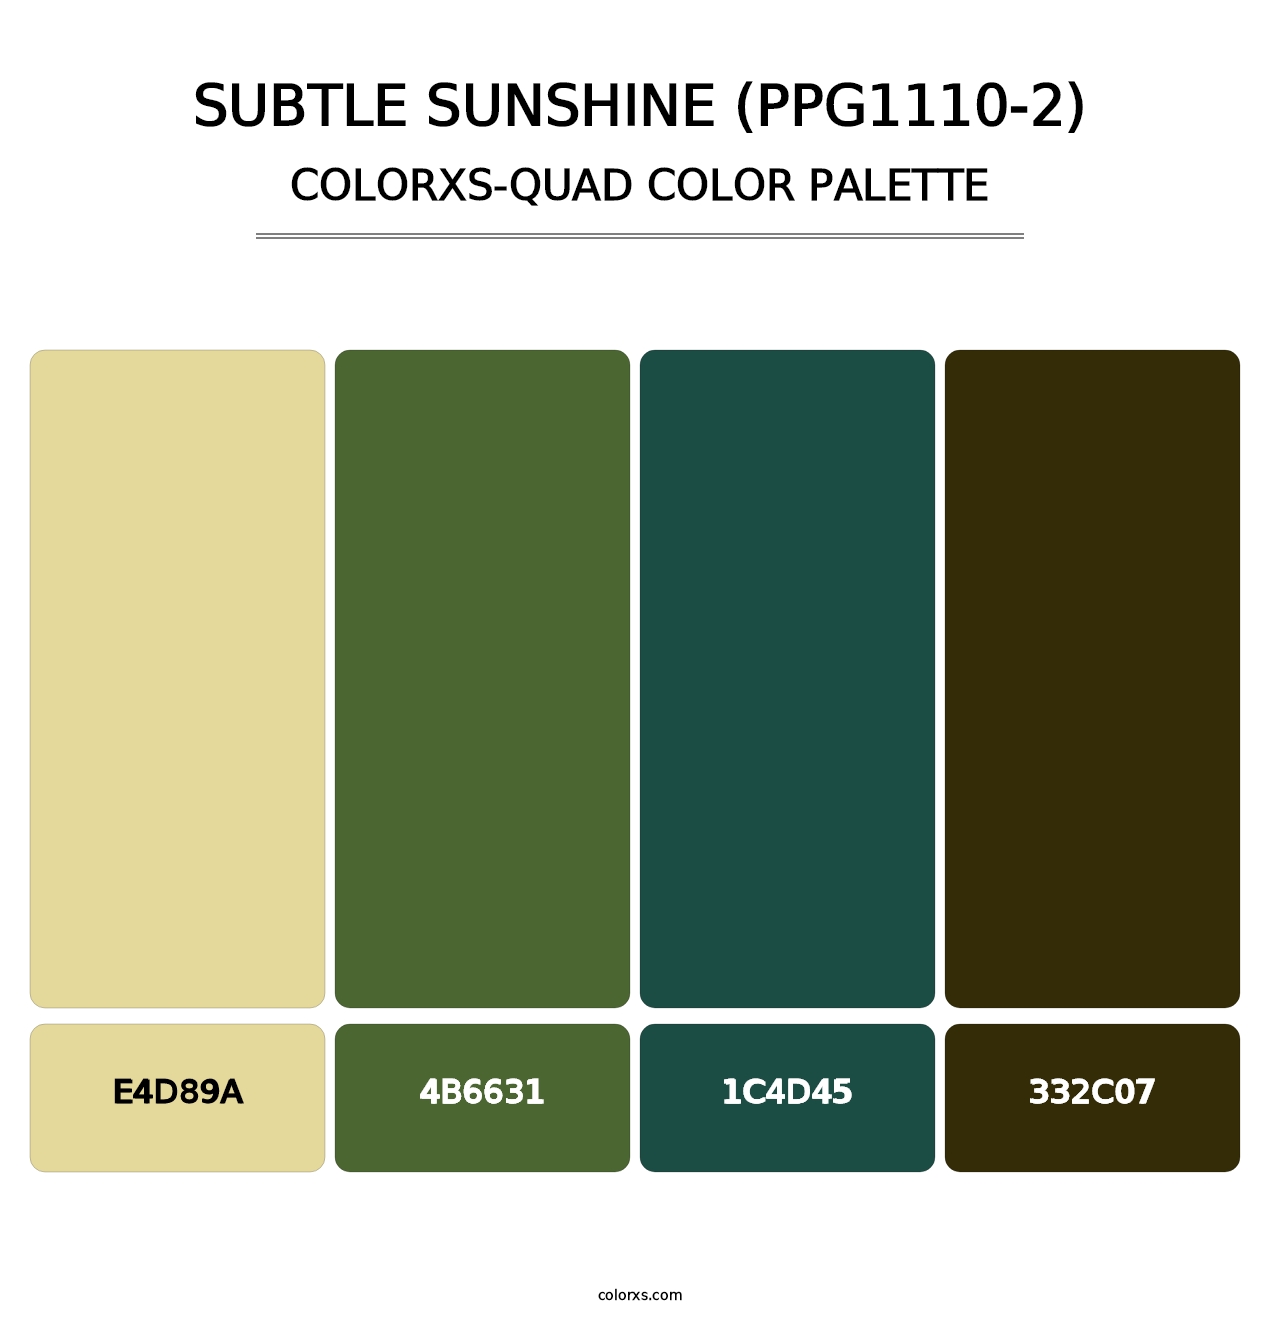 Subtle Sunshine (PPG1110-2) - Colorxs Quad Palette